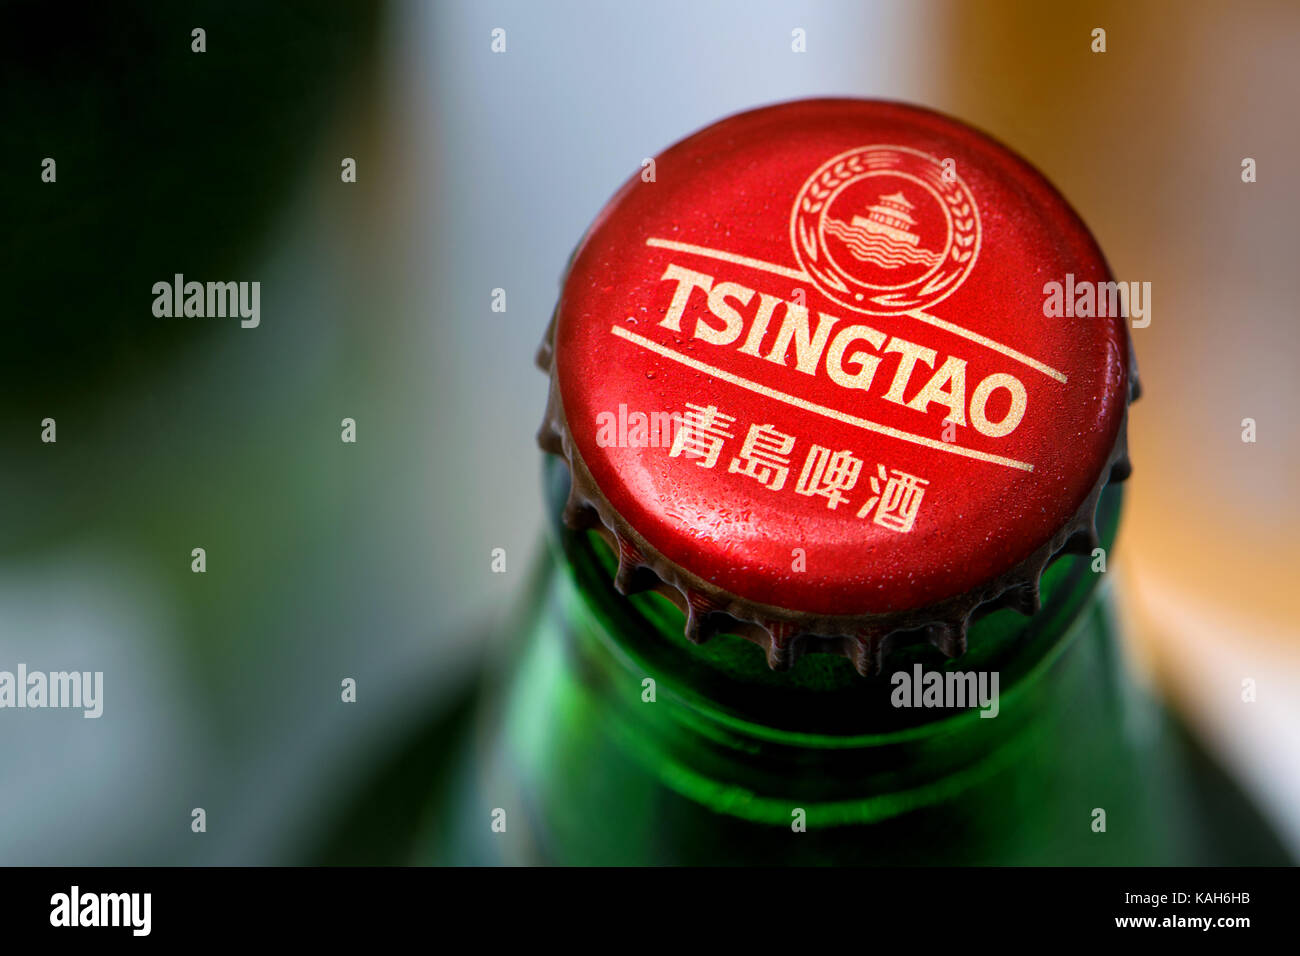 Beer bottle and cap - Tsingtao Japanese lager Stock Photo